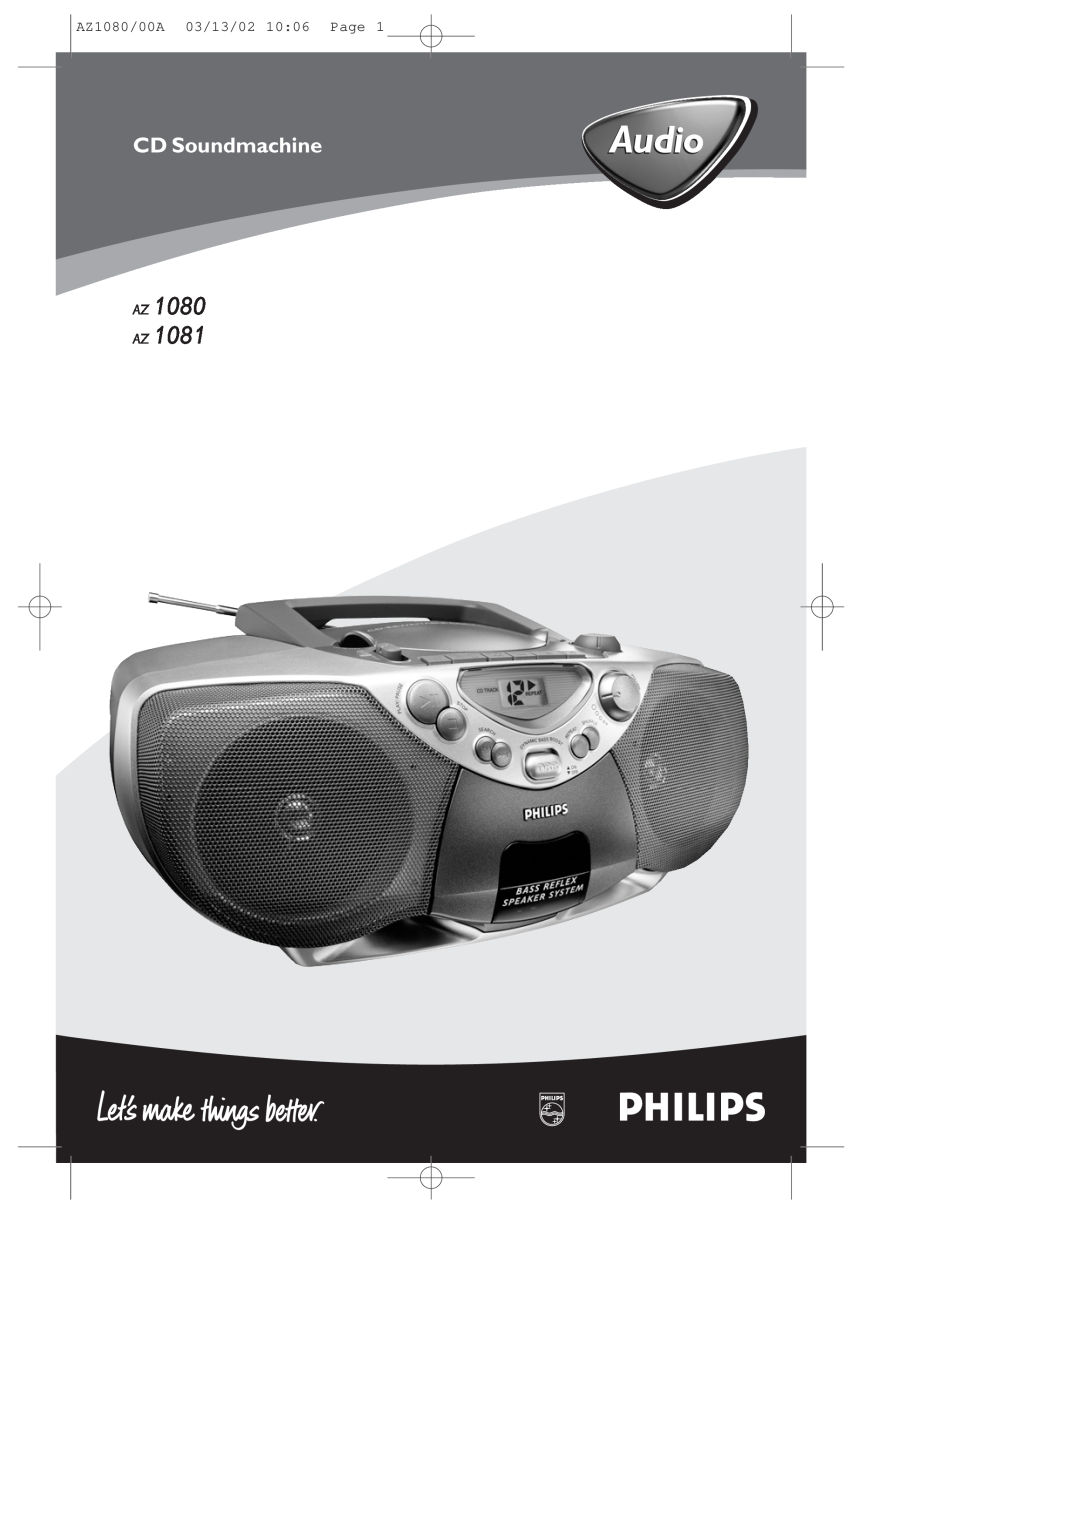 Philips AZ1081/05 manual Audio, Az Az, CD Soundmachine, AZ1080/00A 03/13/02 1006 Page 